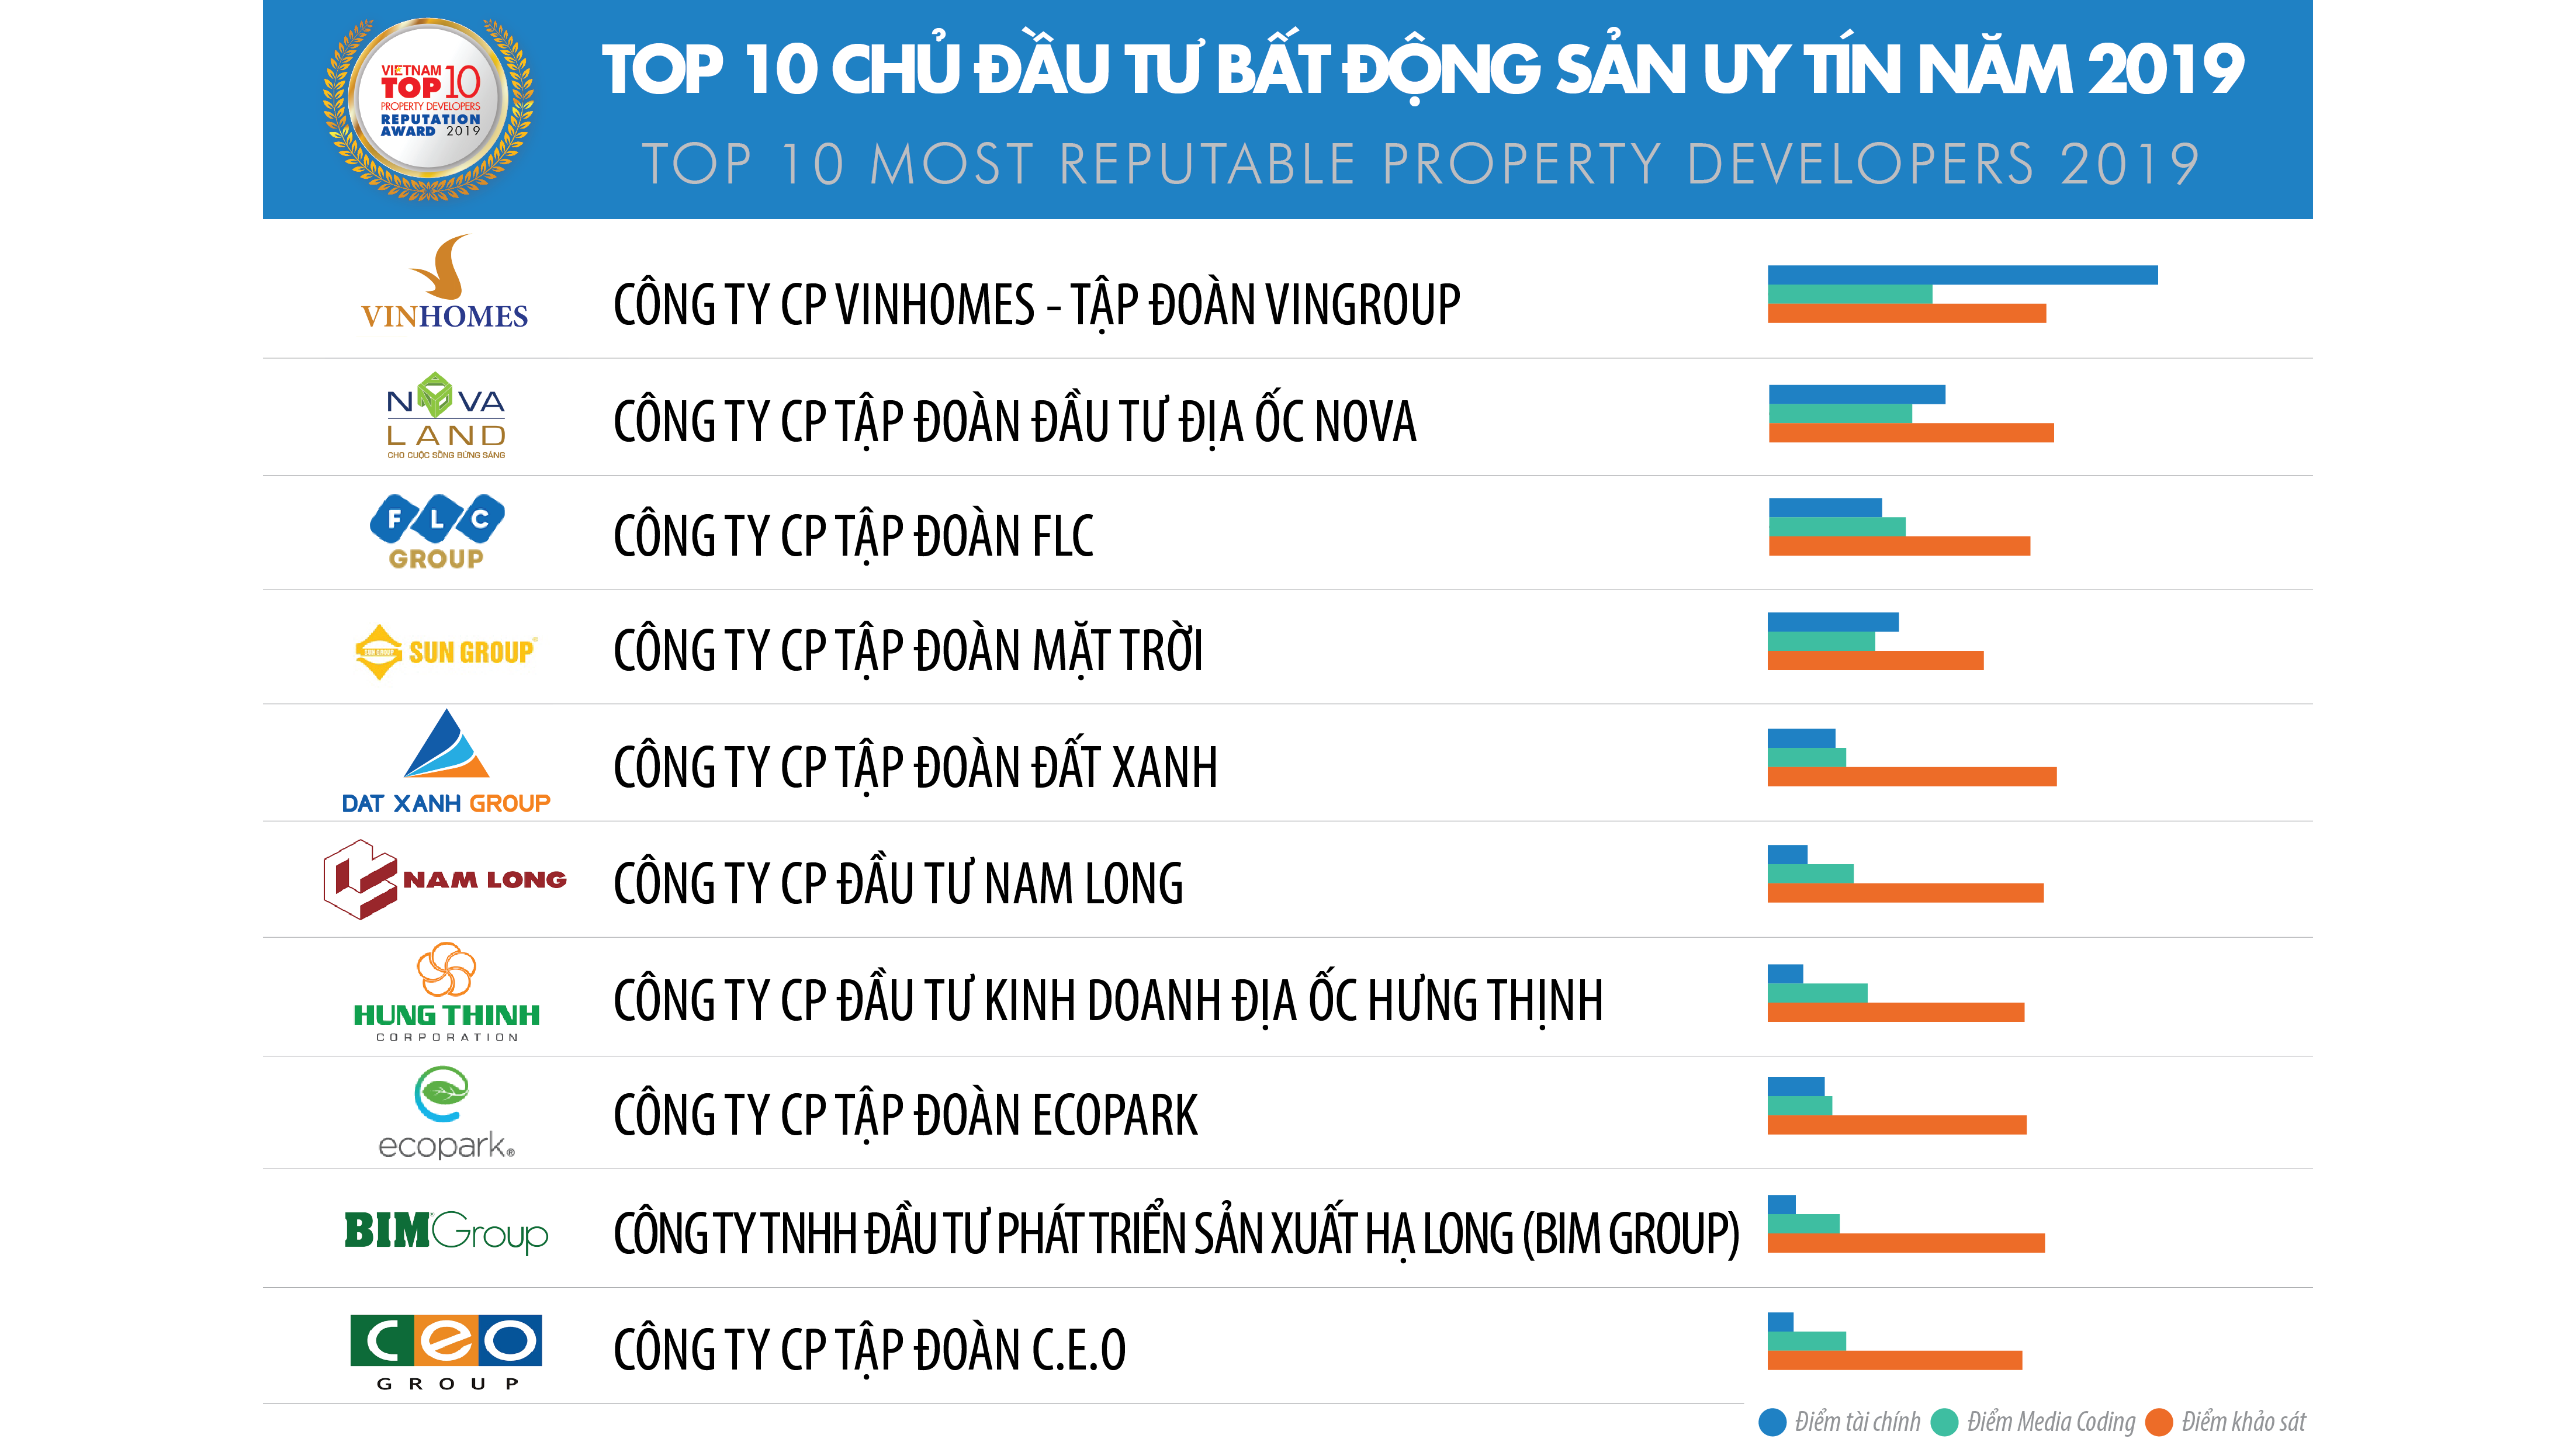 Nguồn: Vietnam Report, Top 10 Công ty uy tín ngành bất động sản năm 2019, tháng 3/2019